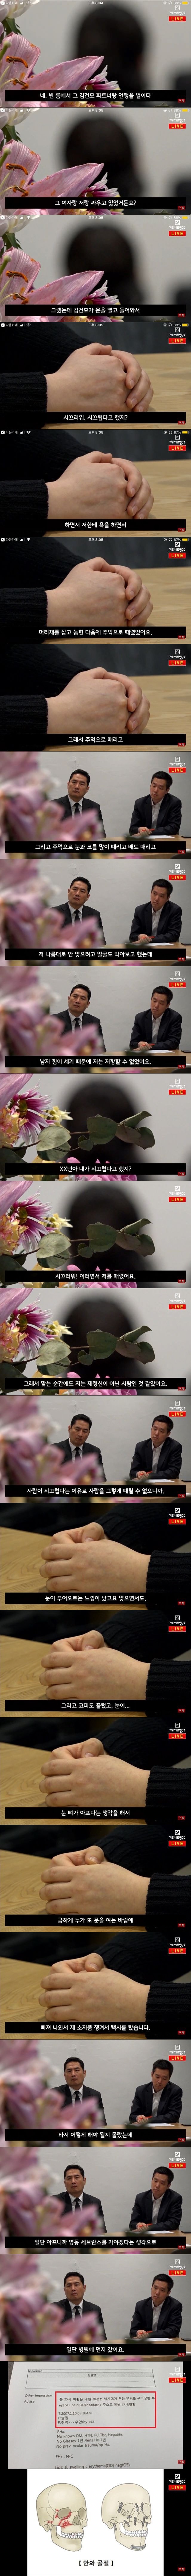 김건모 폭행 피해자 인터뷰